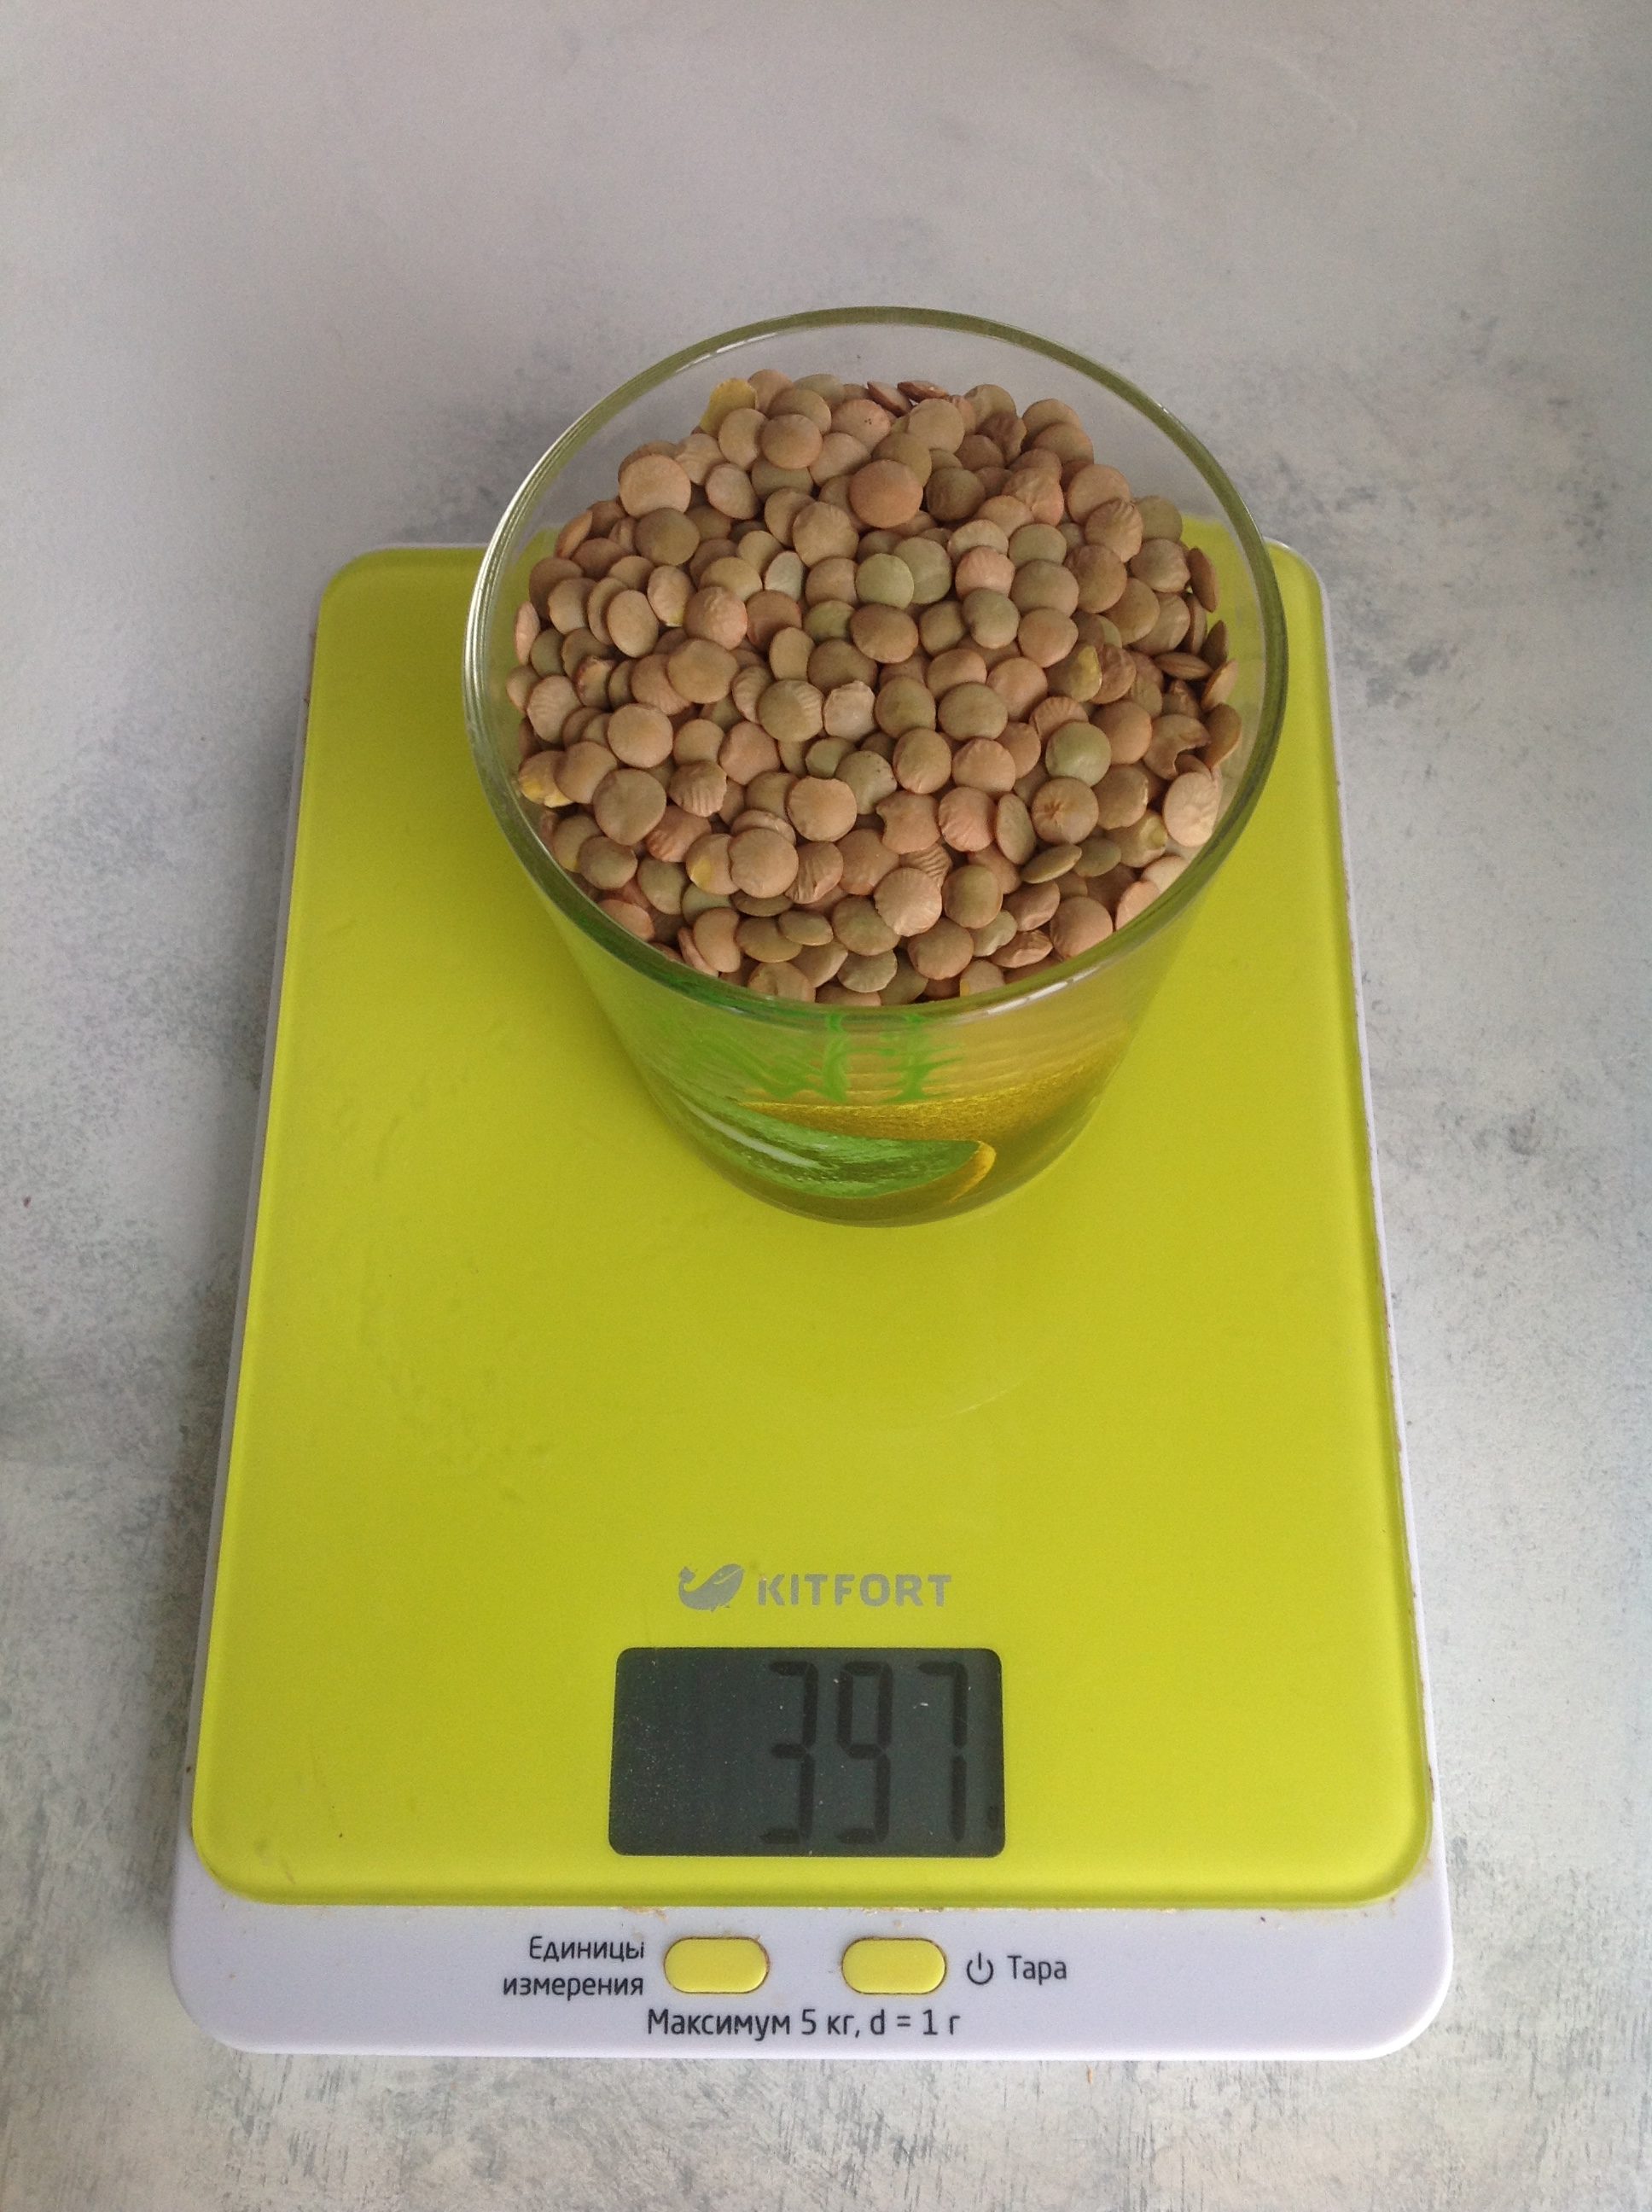 250 毫升玻璃杯中的干扁豆有多重？